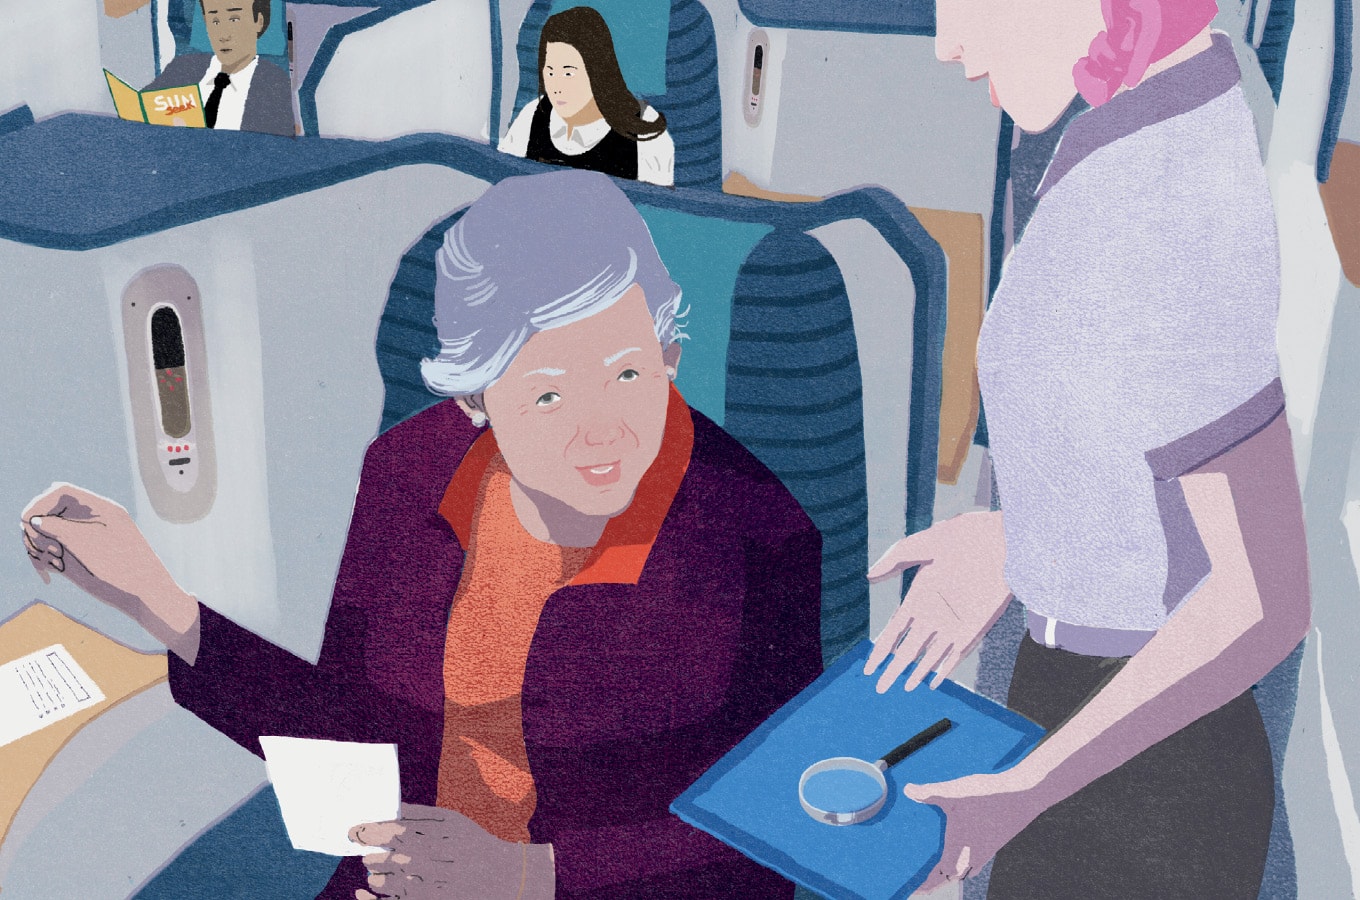 No avião, comissária oferece lupa de aumento para auxiliar senhora com dificuldade para ler.